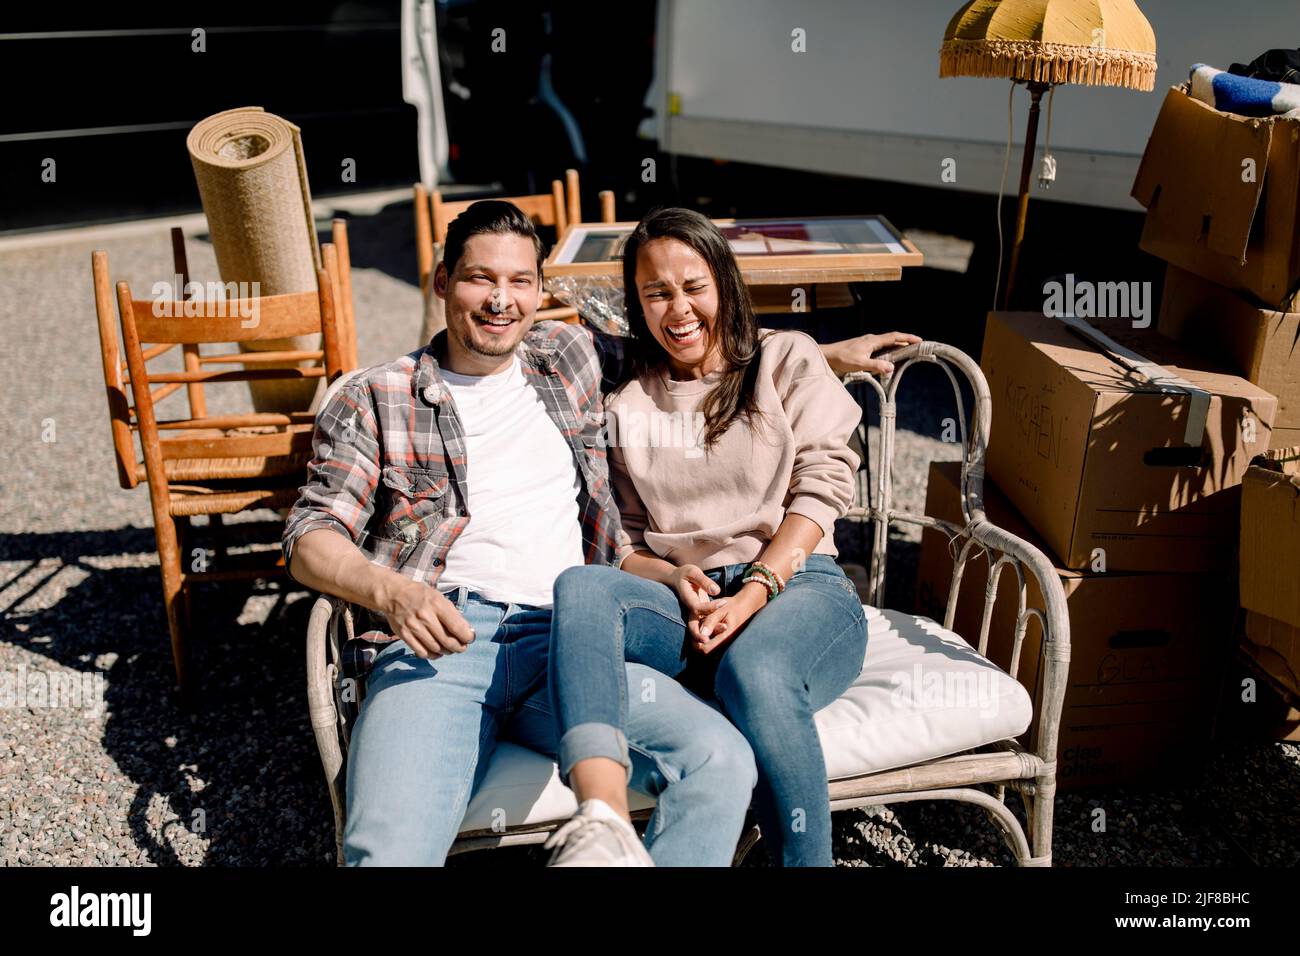 Porträt eines lächelnden Paares, das während eines sonnigen Tages auf einem Stuhl sitzt Stockfoto